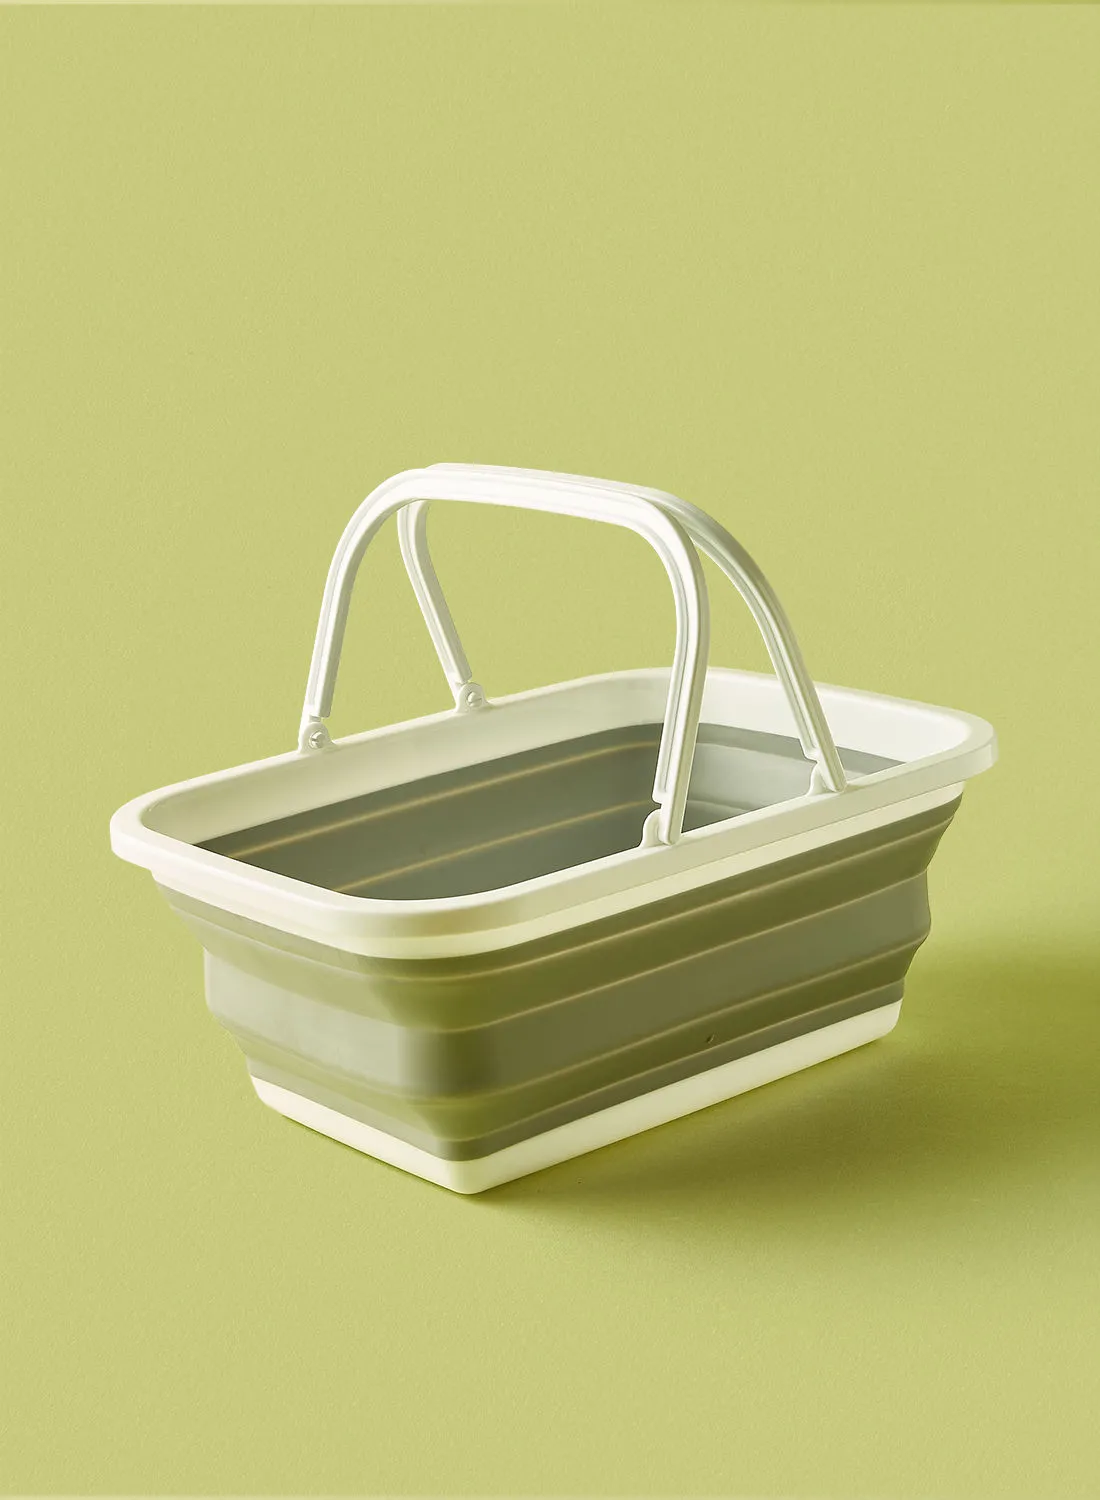 noon east Basket - Collapsible - Kitchen Storage - Kitchen Cabinet Organizer - Storage Basket - Light Grey